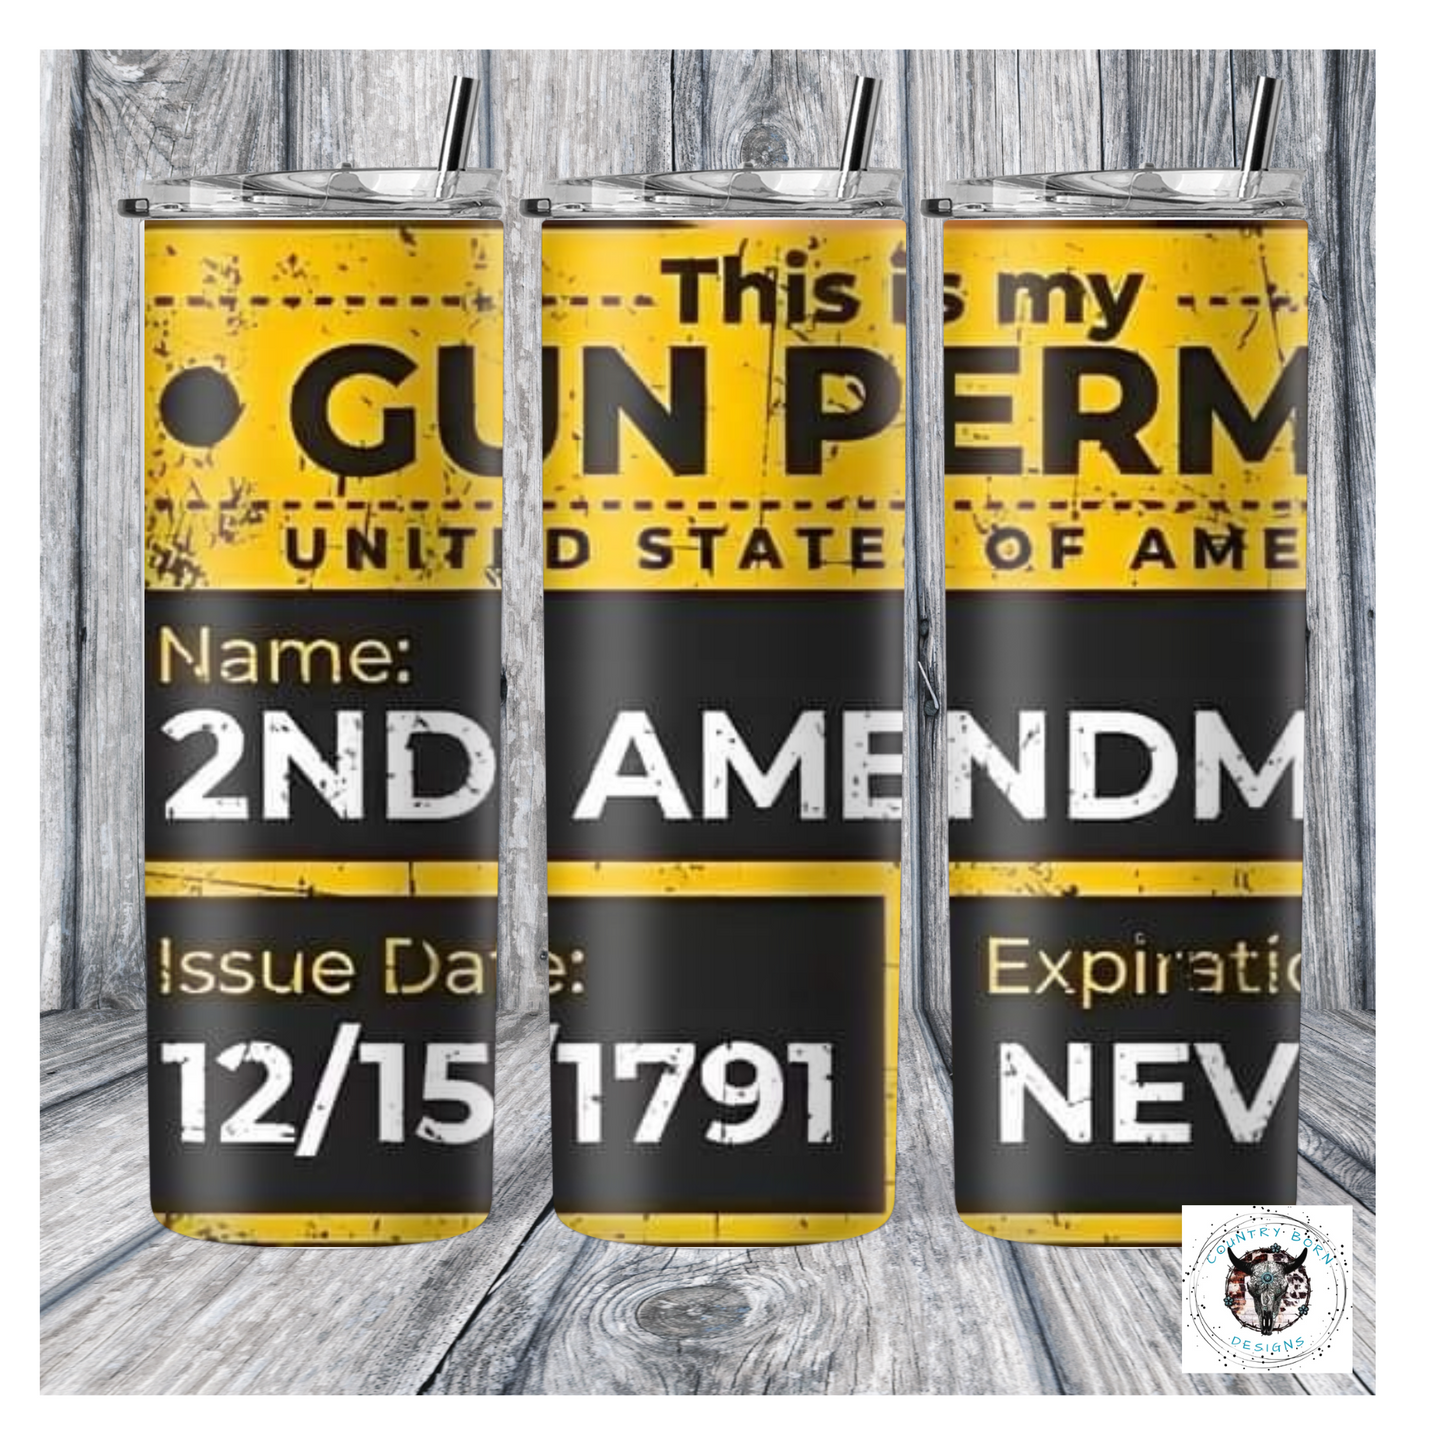 2nd Amendment Gun Permit